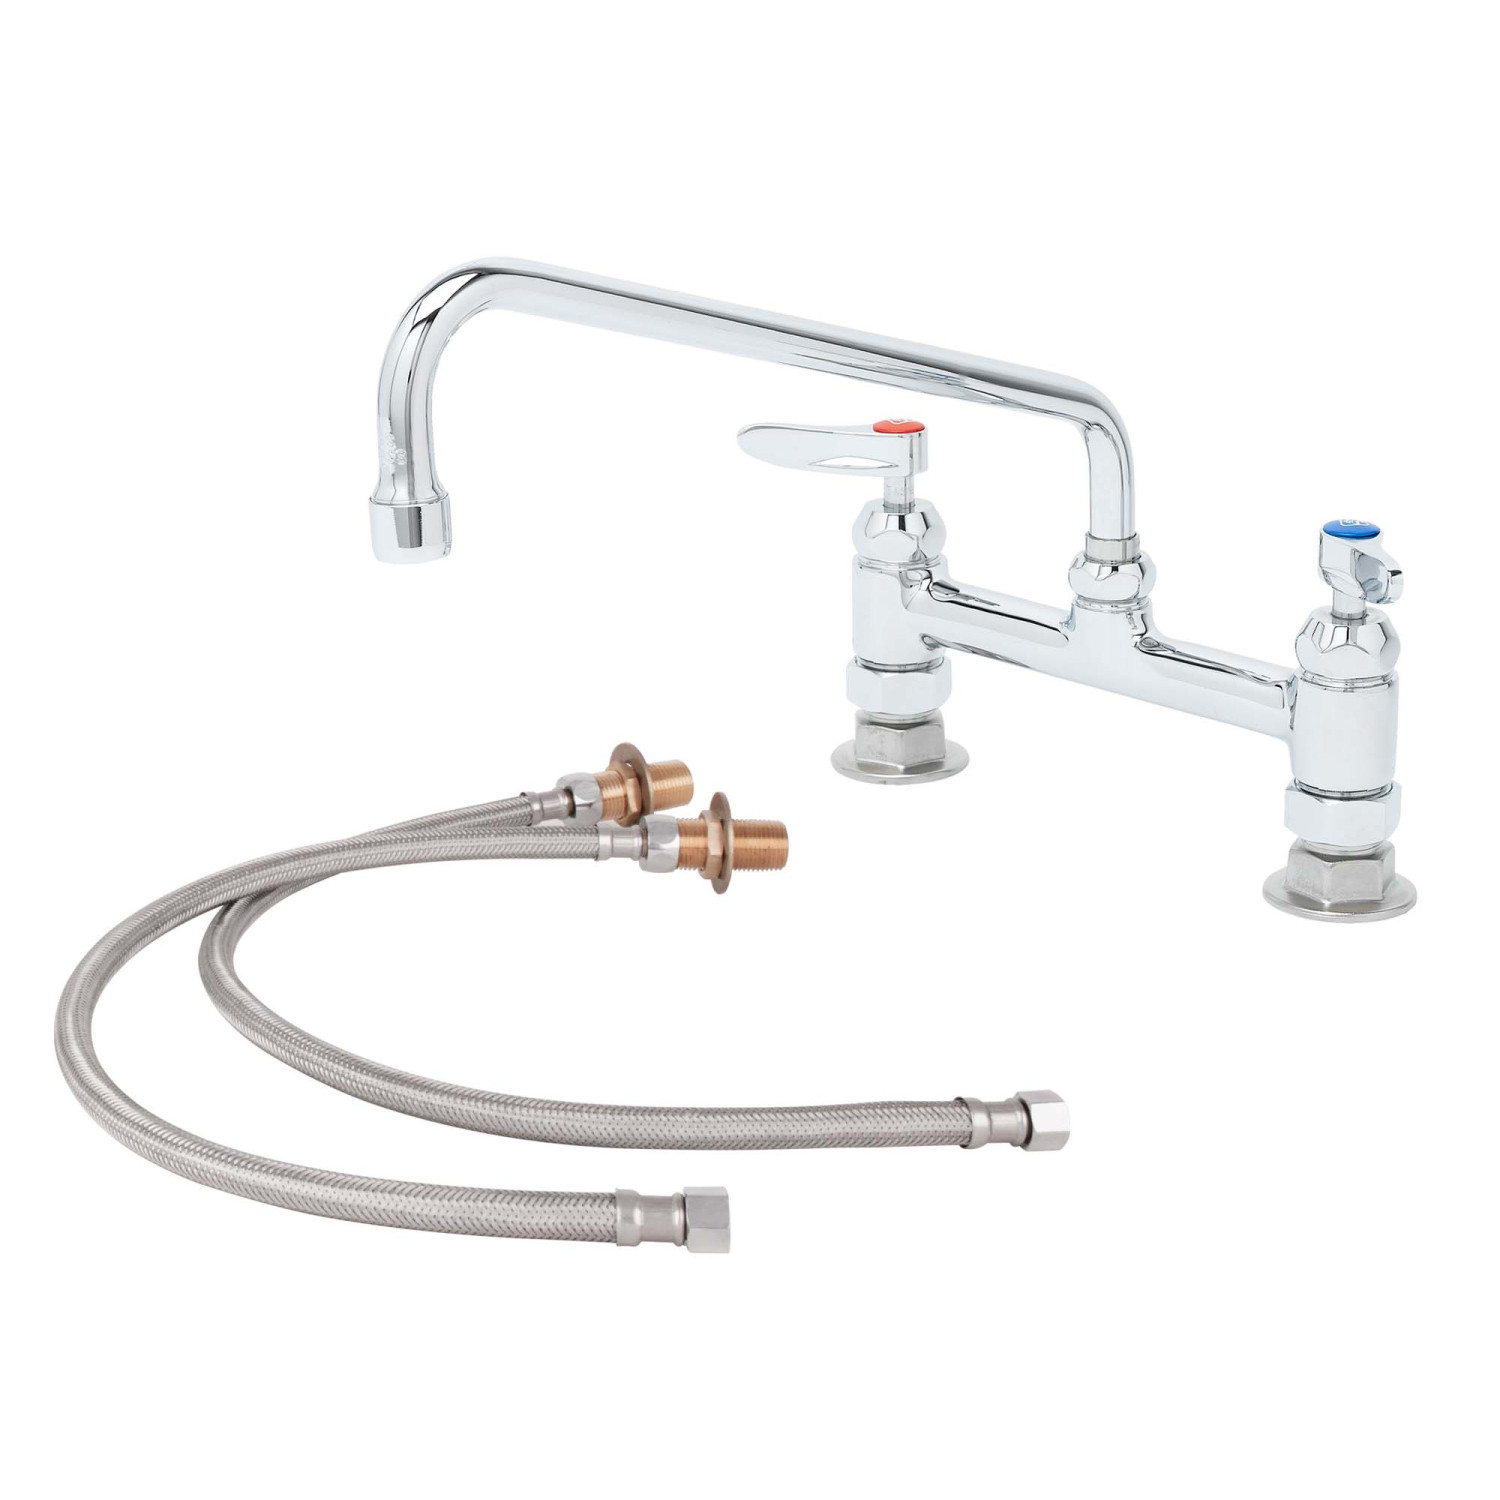 Top-Line® Double Pantry Deck Mount Faucet Body with Compression Valves no Spout 